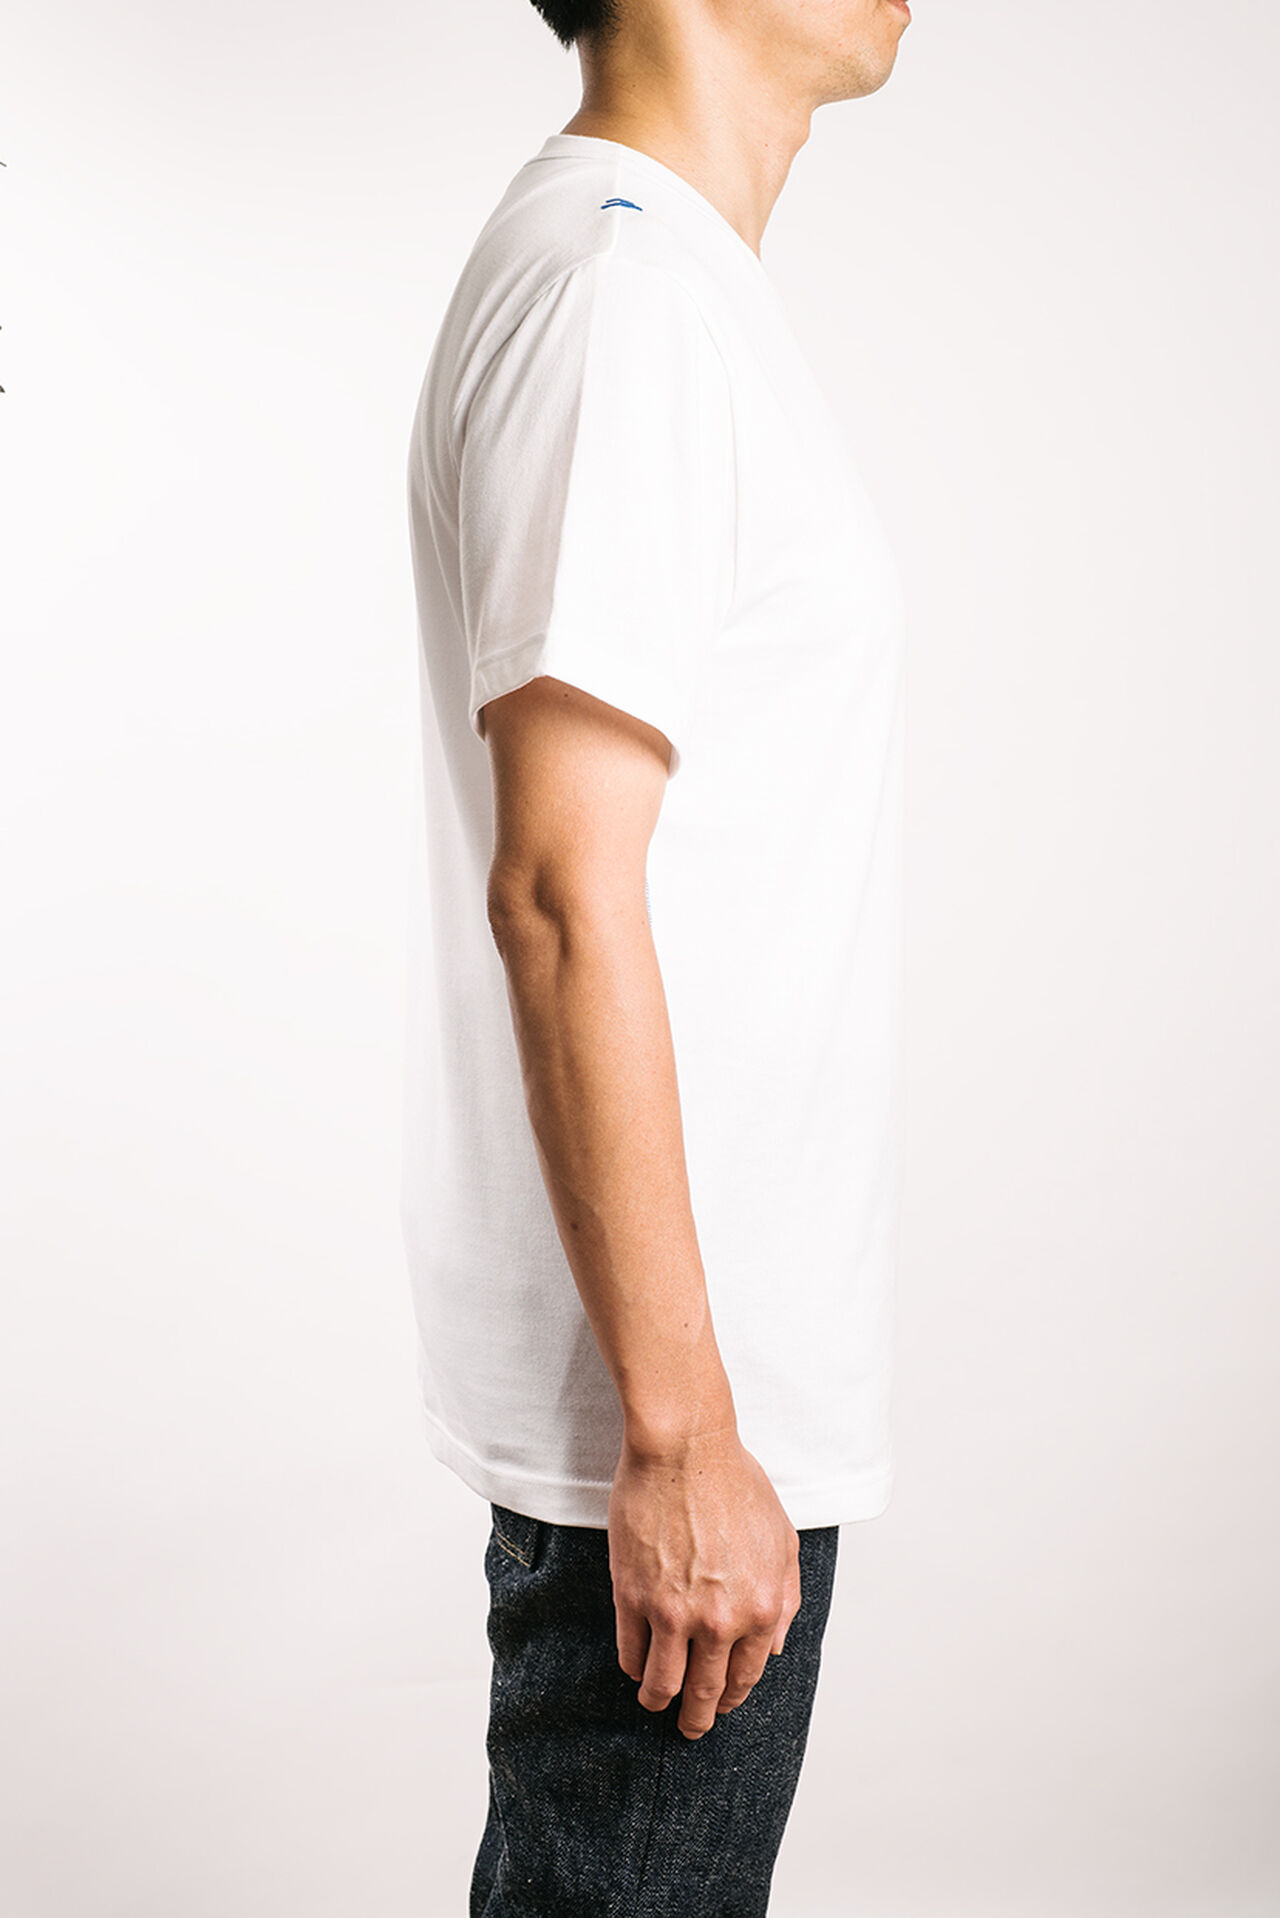 GES  Moonshine White  "Geppaku" T- Shirt,, large image number 1